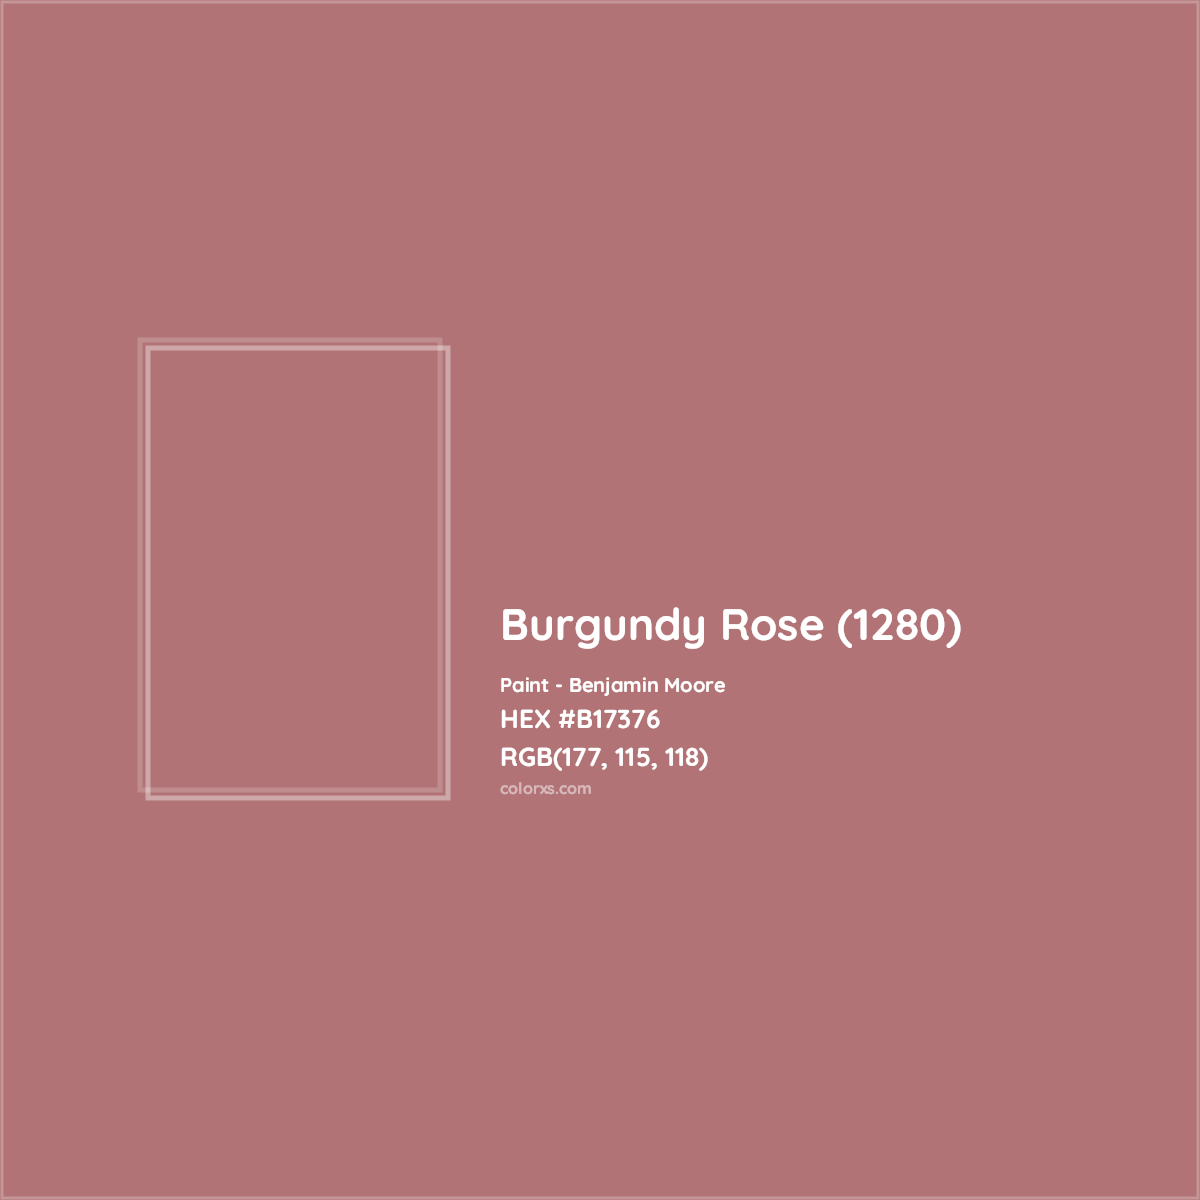 HEX #B17376 Burgundy Rose (1280) Paint Benjamin Moore - Color Code